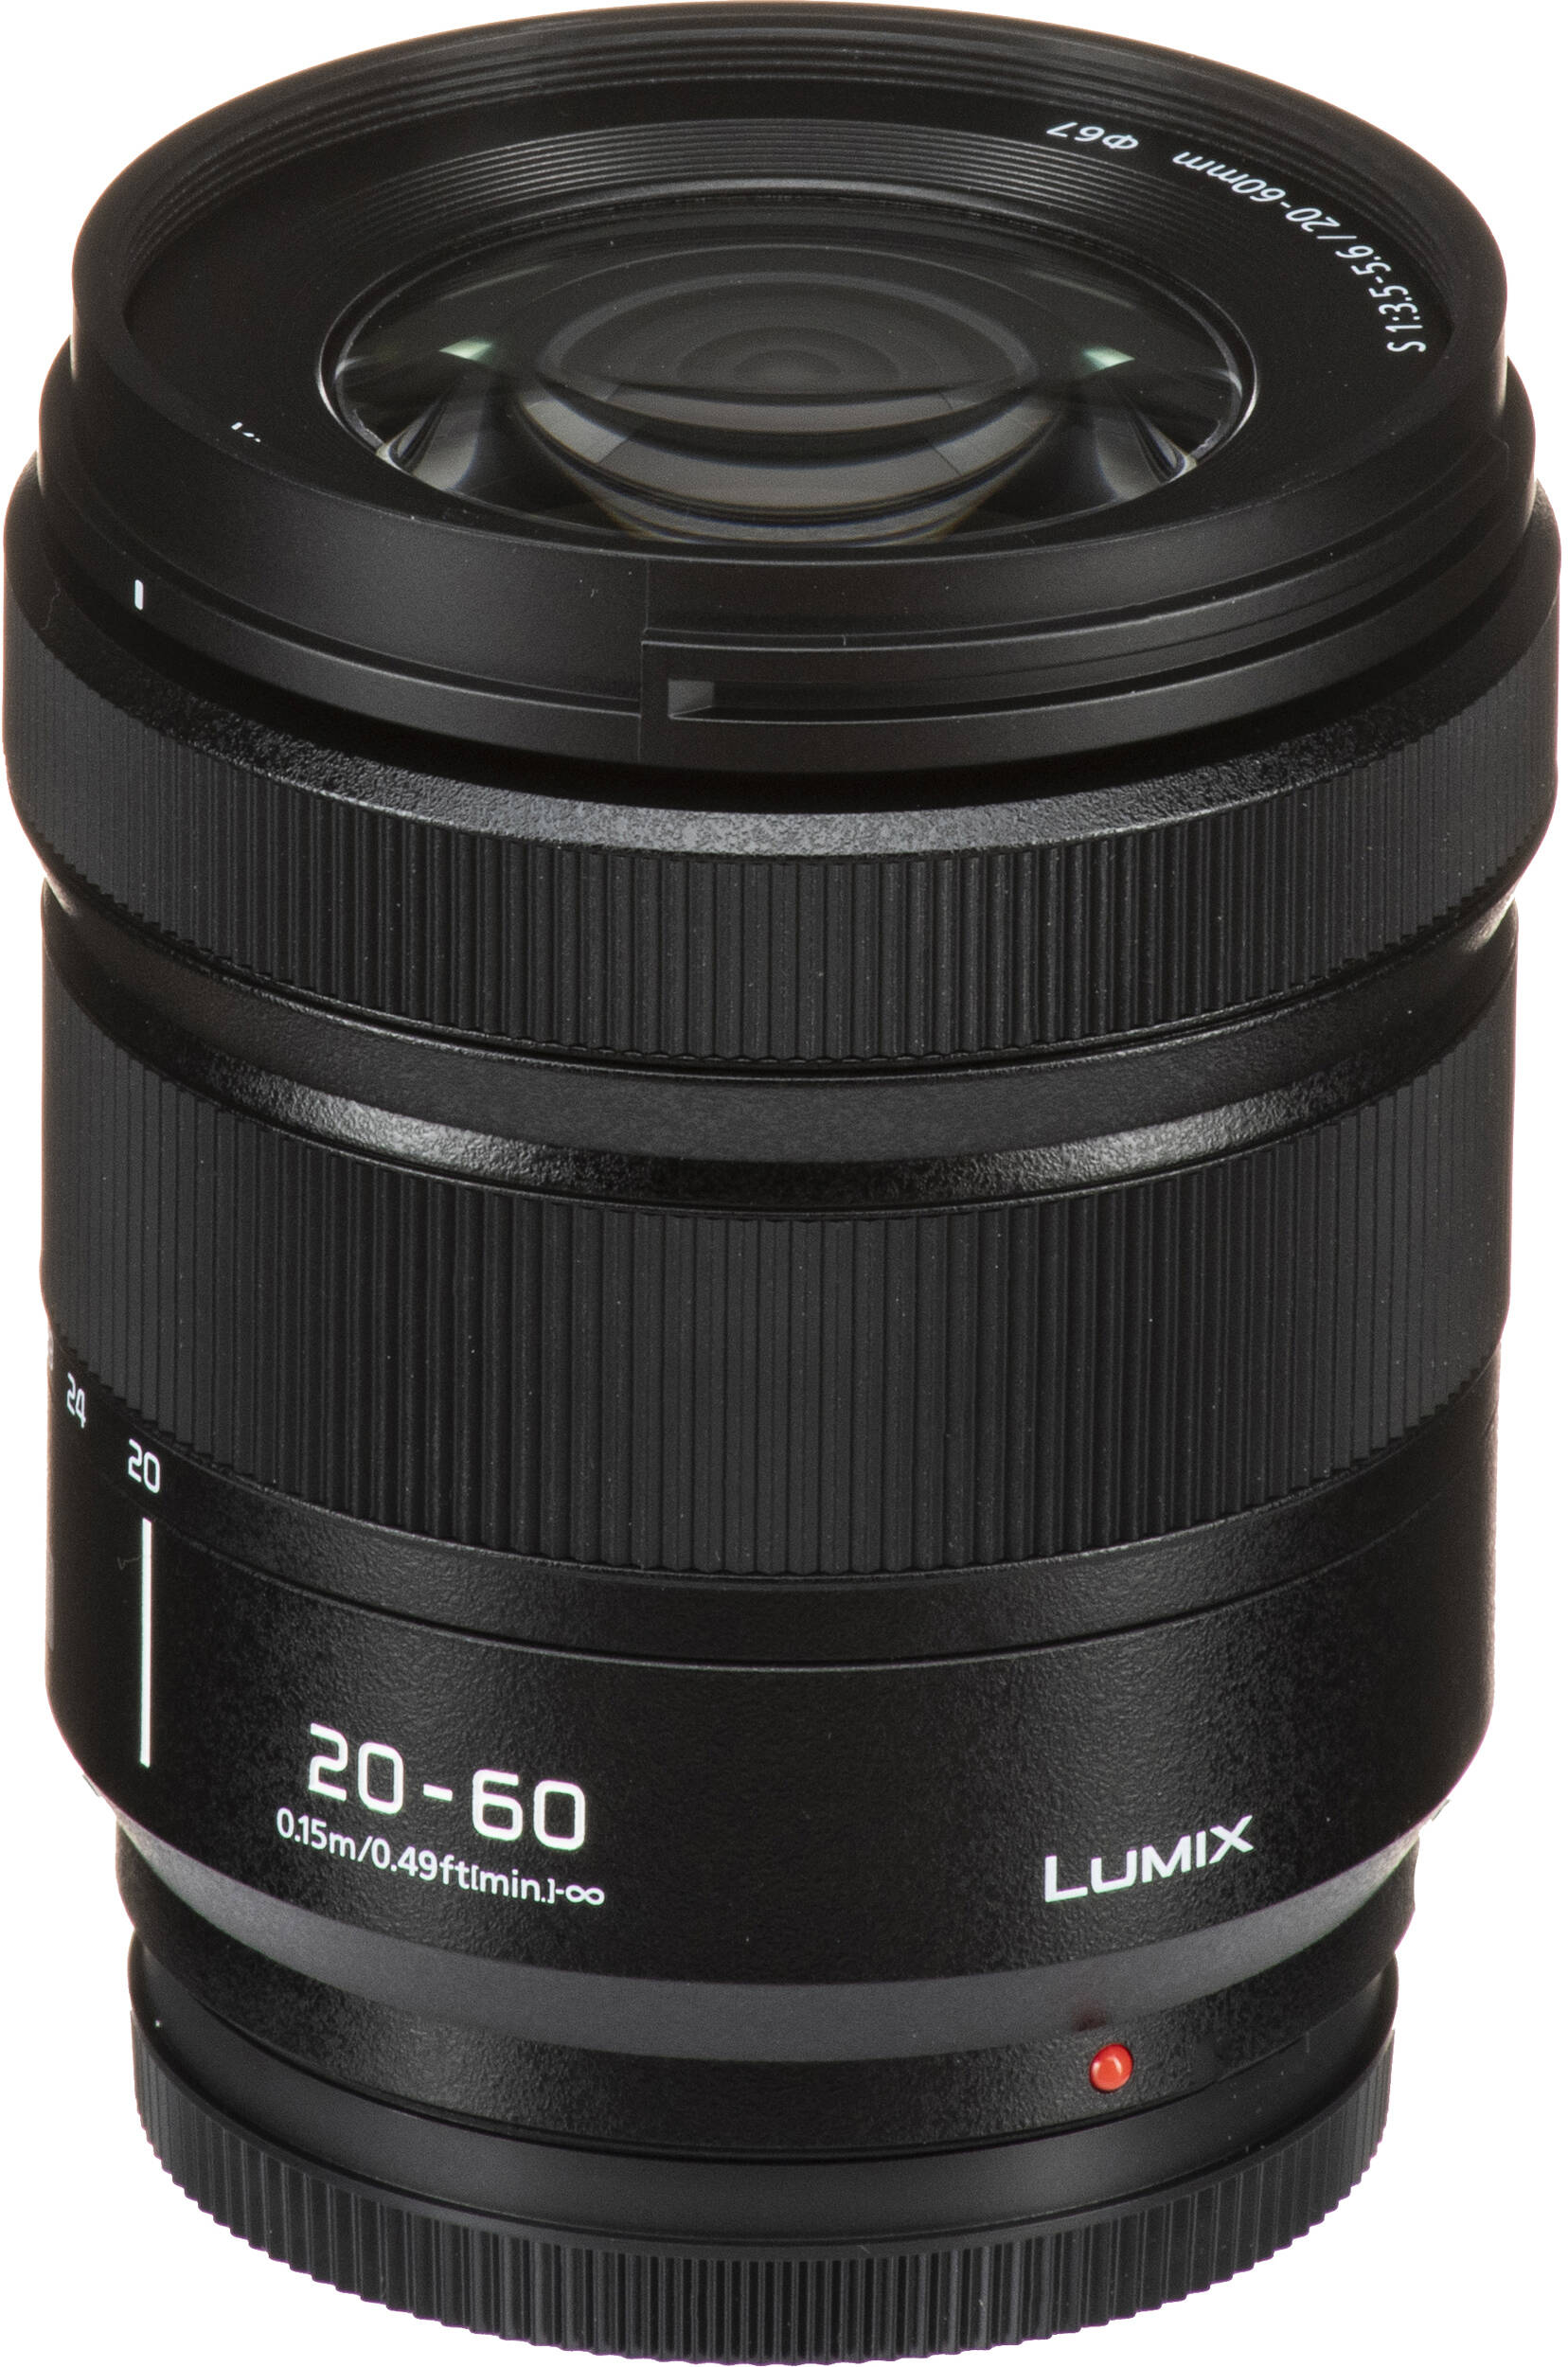 Фотоапарат Panasonic Lumix DC-S9 + 20-60mm f/3.5-5.6 Jet Black (DC-S9KE-K)фото22